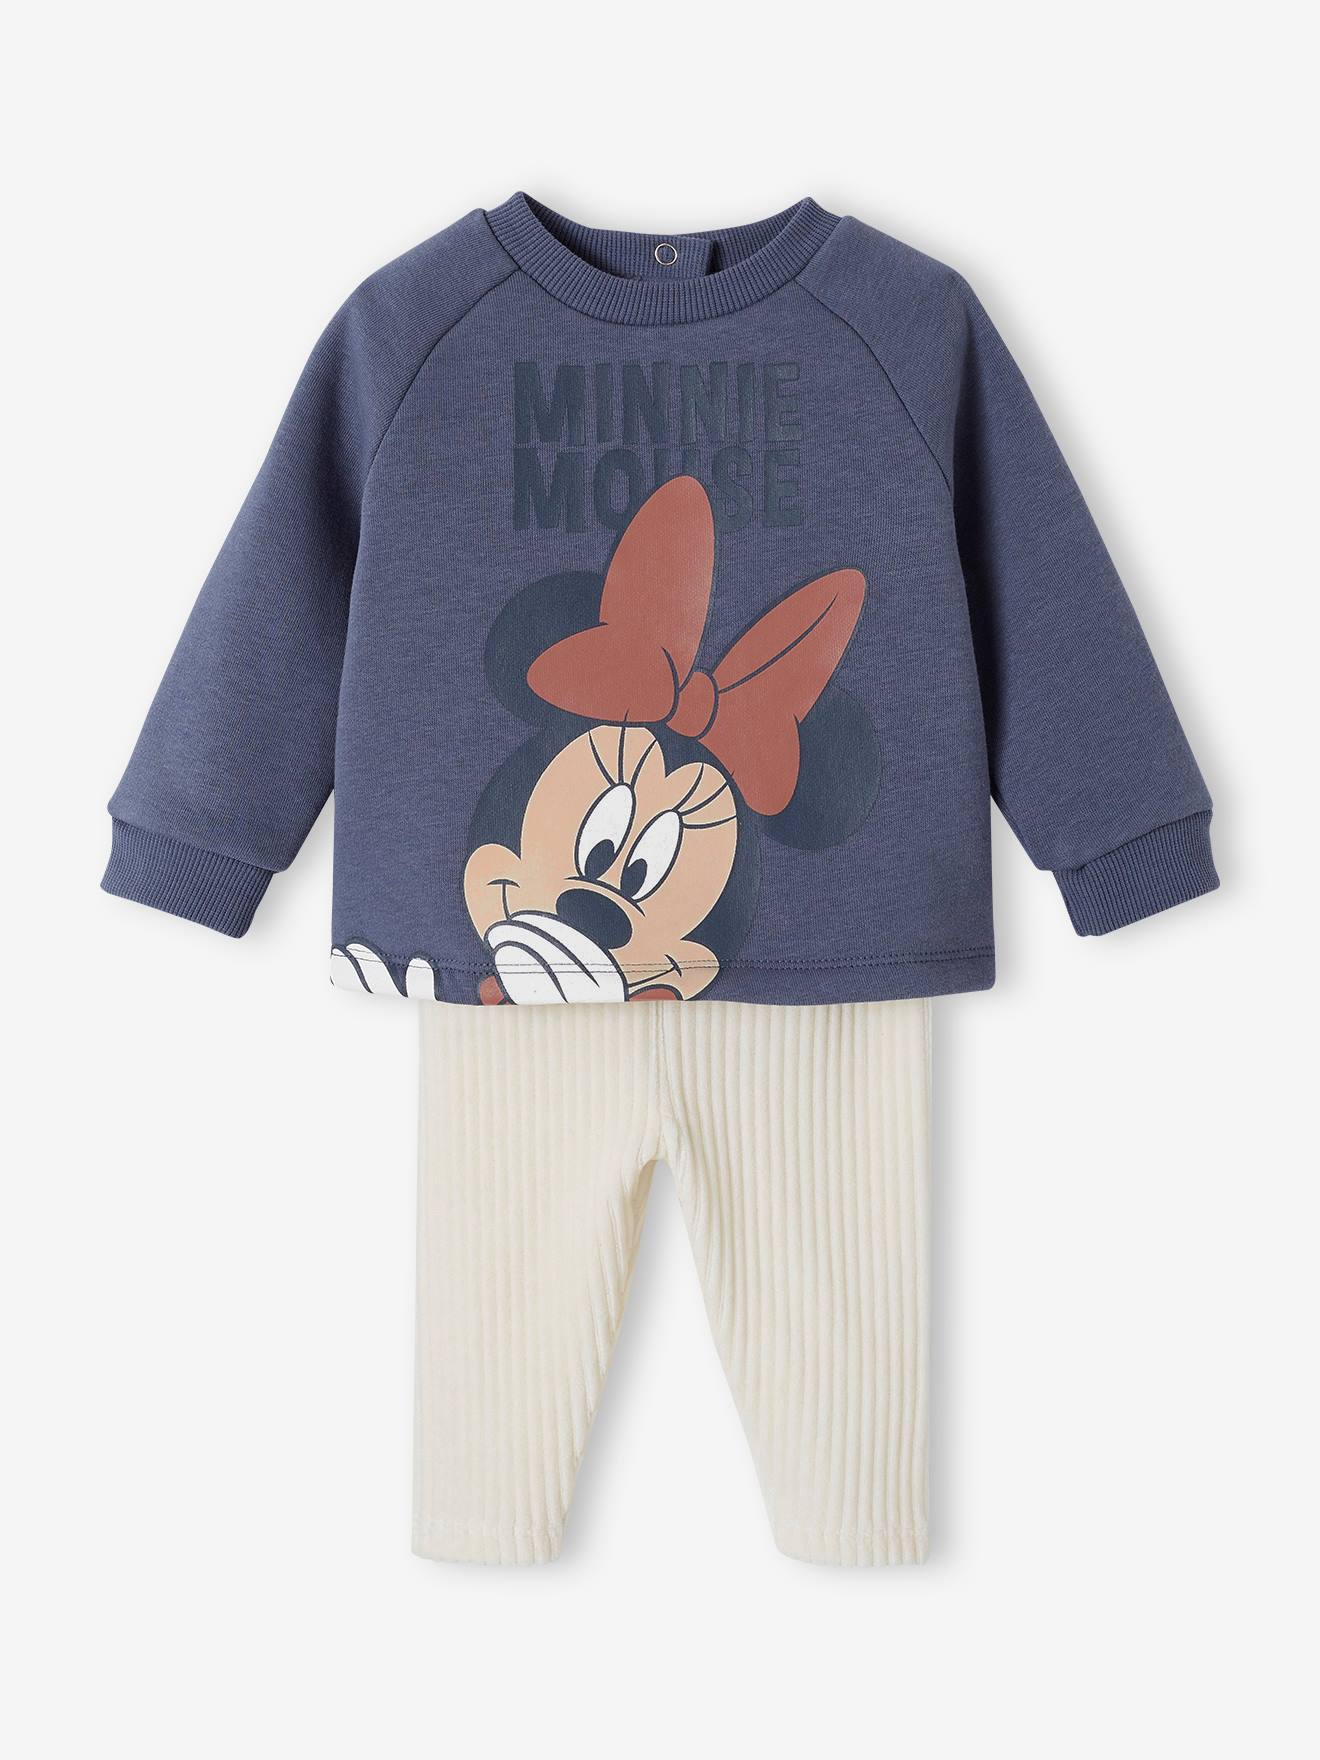 Disney® set voor babymeisje fleece sweater + fluwelen broek leiblauw